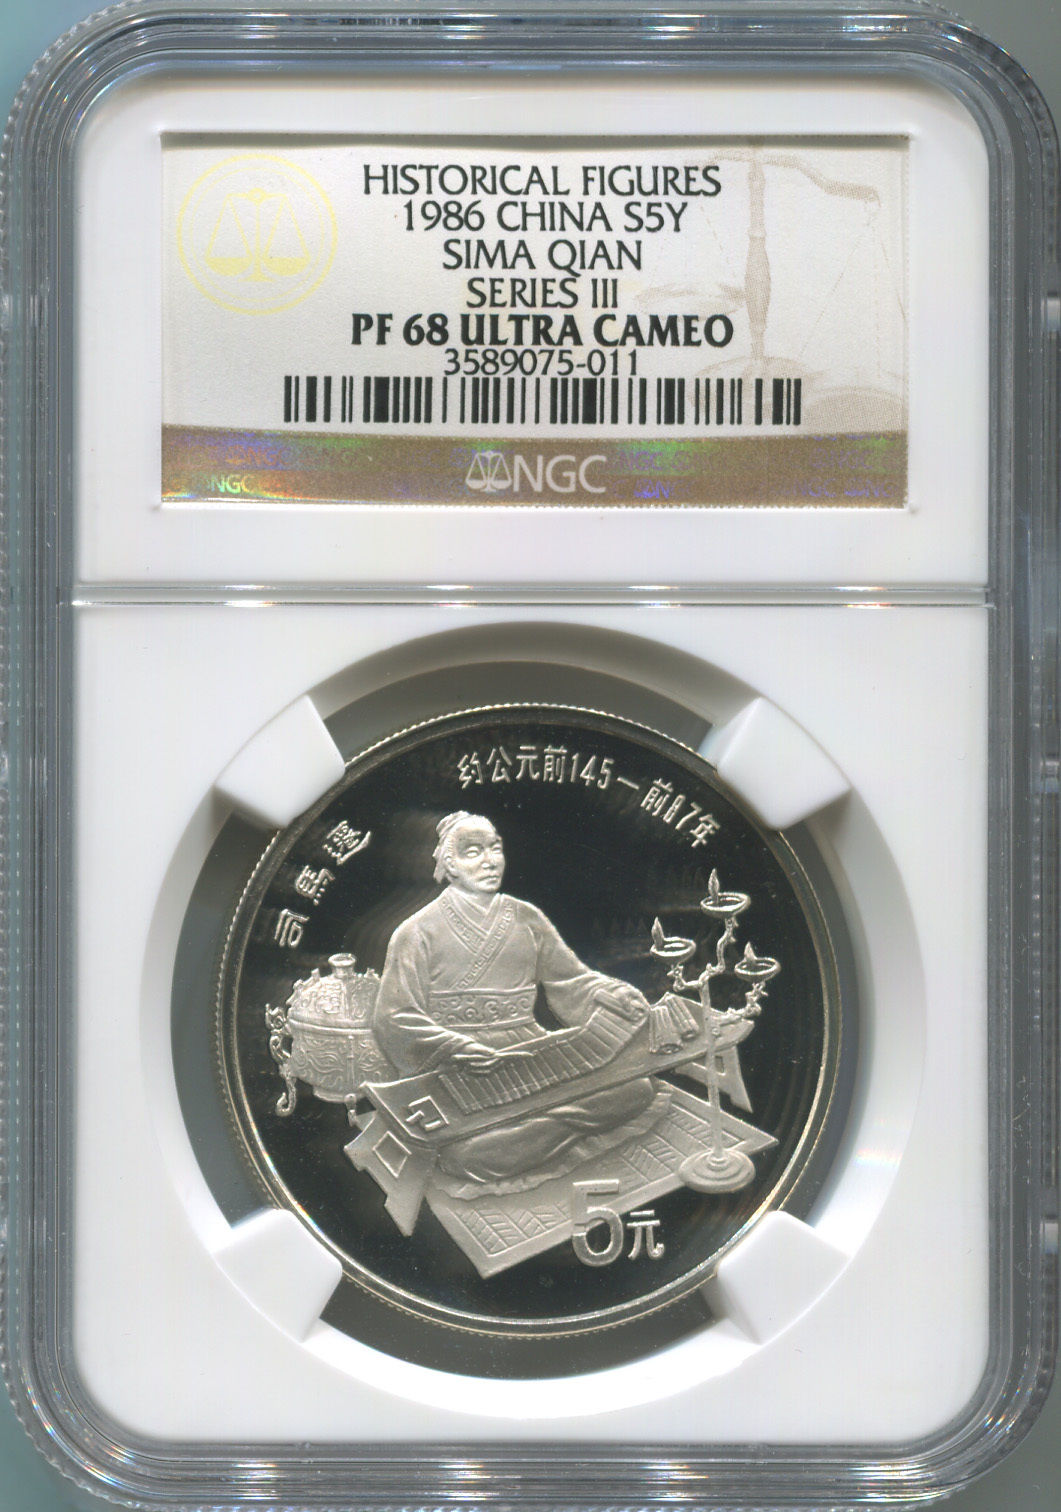 Historical Figures. 1986 China Silver 5 Yuan. Sima Qian. NGC PF68 U.C. Image 1